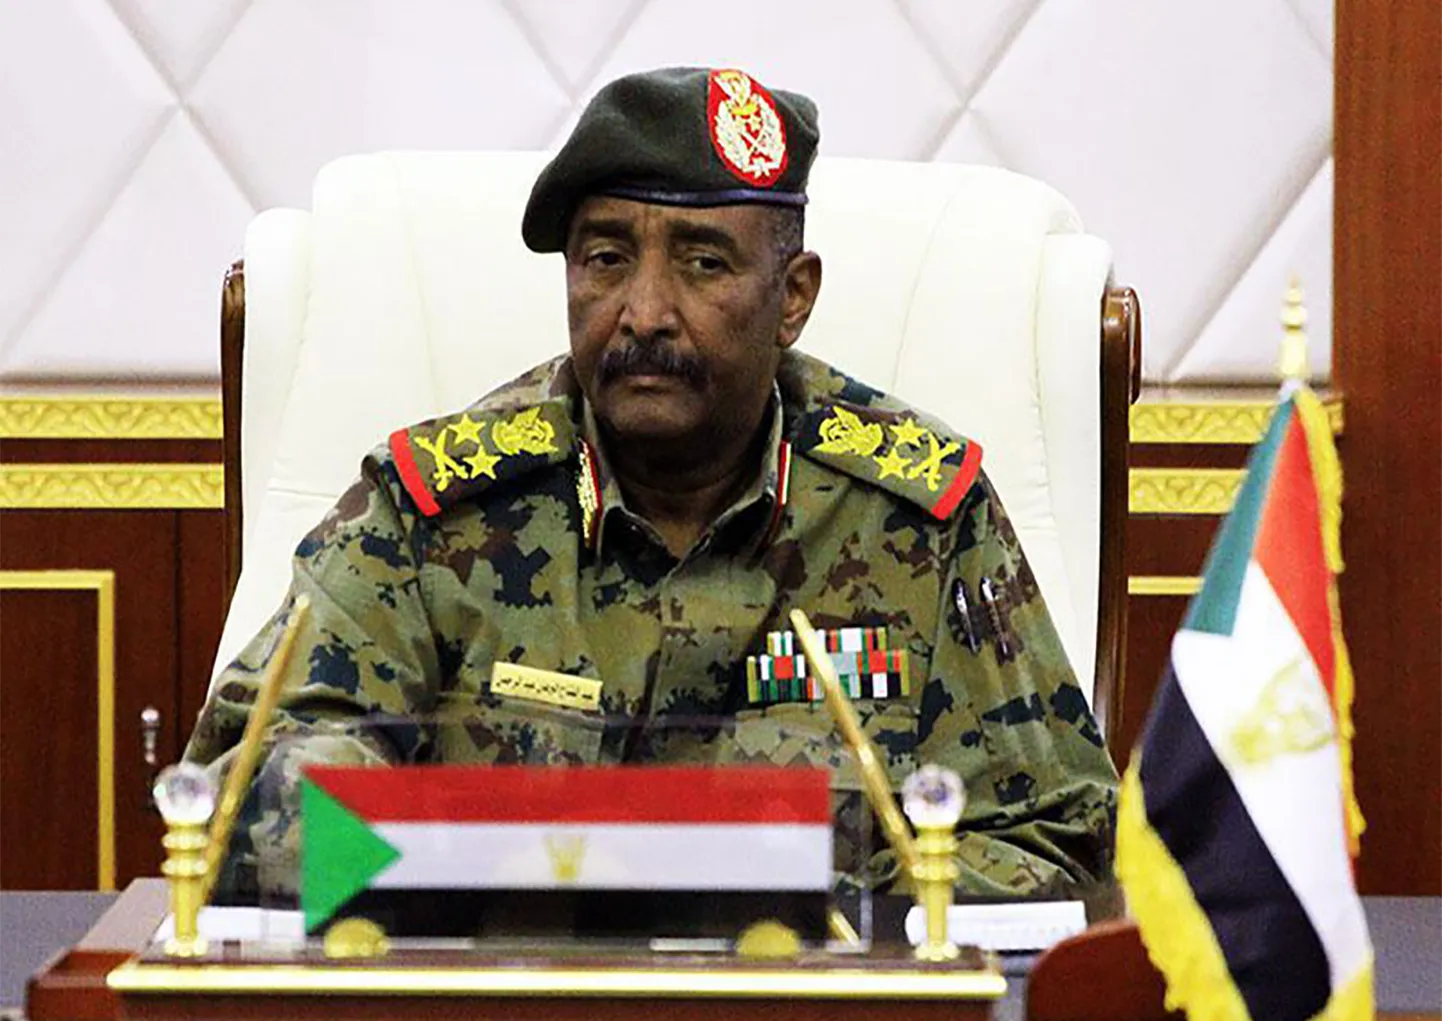 Sudaani sõjaväenõukogu juht kindral Abdel Fattah al-Burhan 16. aprillil pealinnas Hartumis nõukogu istungil.